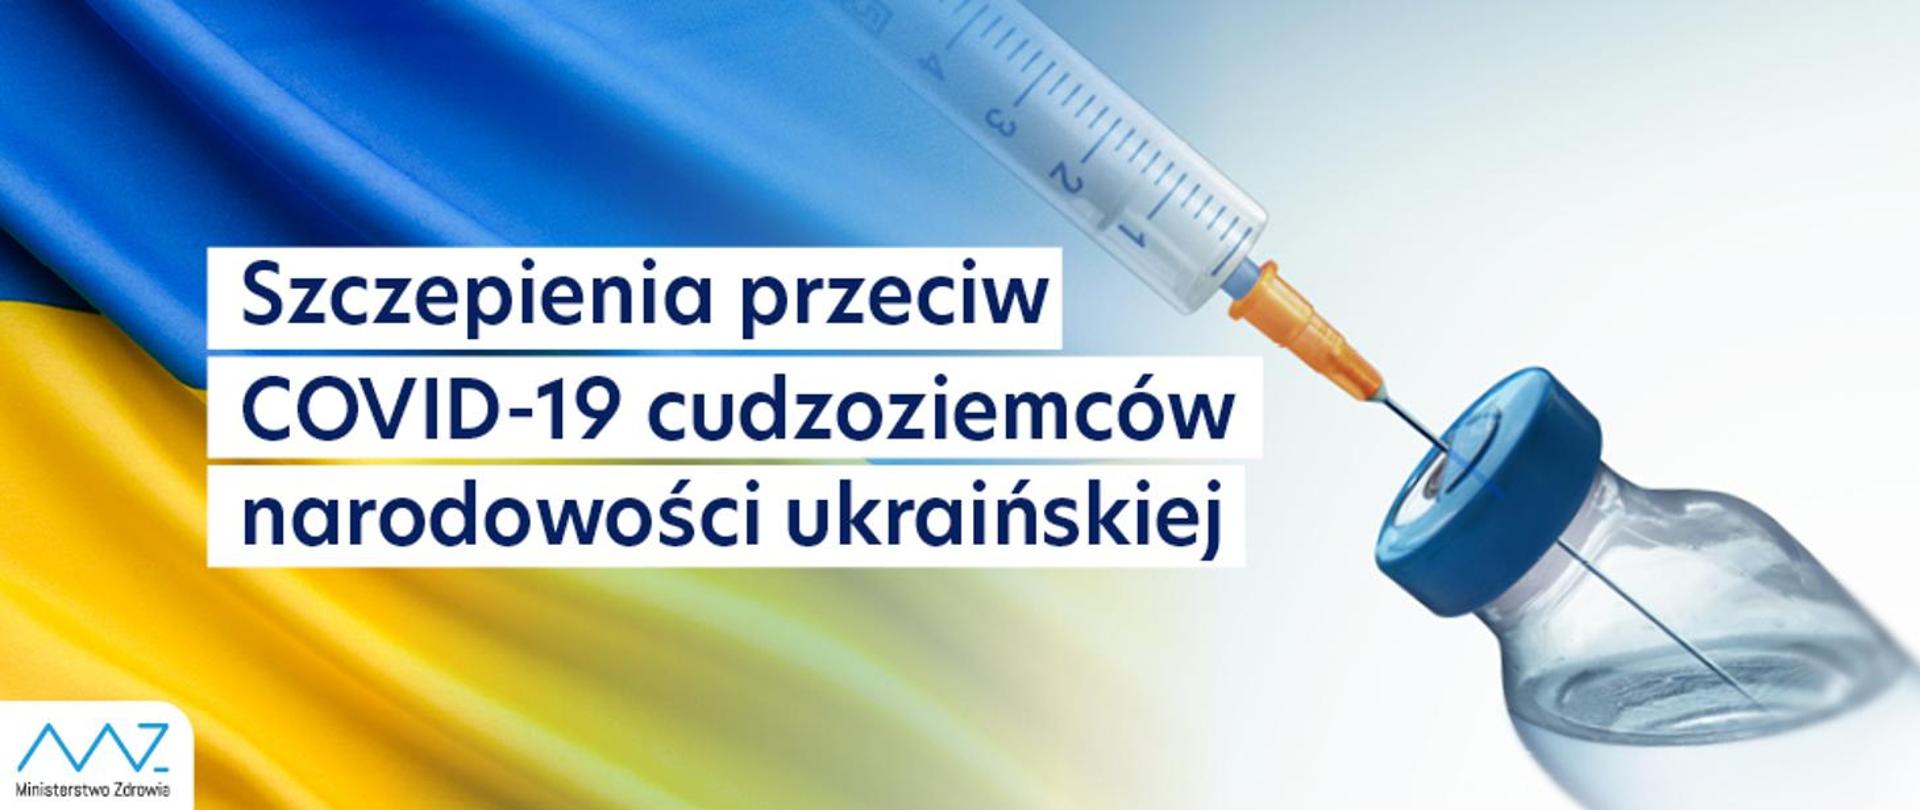 Ministerstwo Zdrowia / Szczepienia przeciw Covid-19 cudzoziemców narodowości ukraińskiej (w j. polskim)